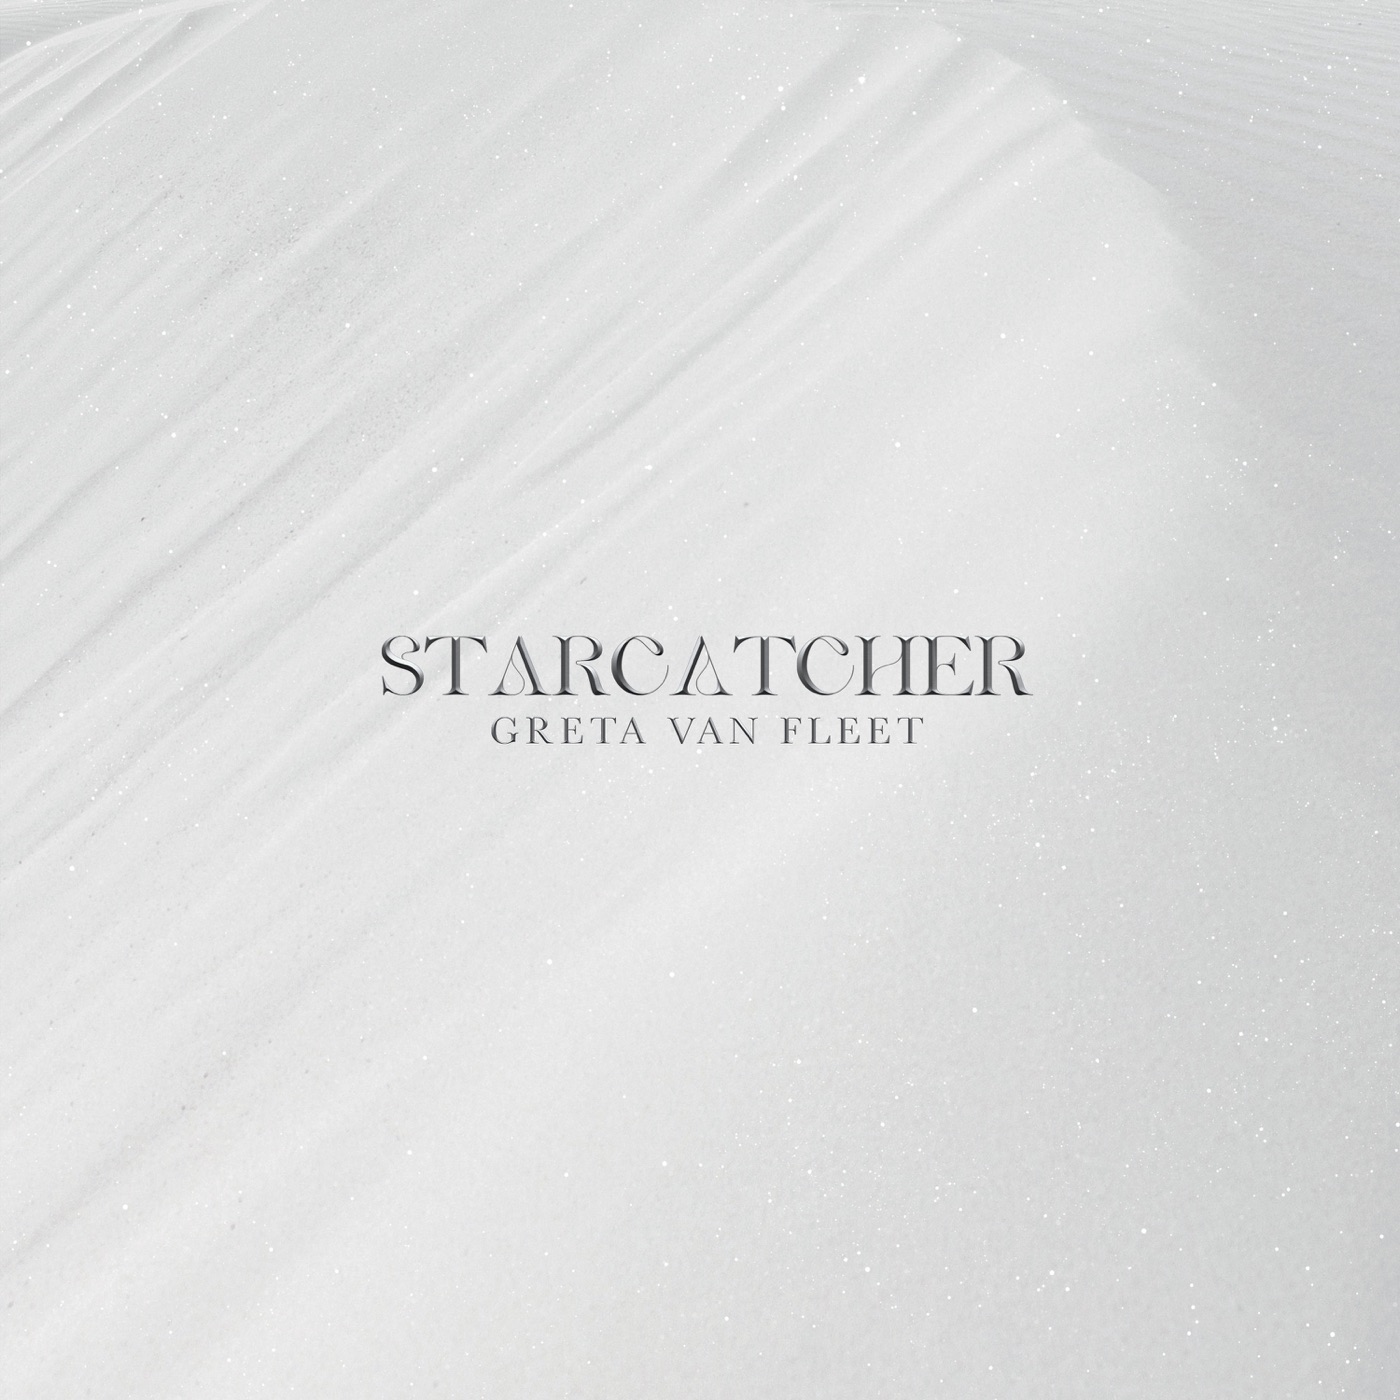 Starcatcher by Greta Van Fleet